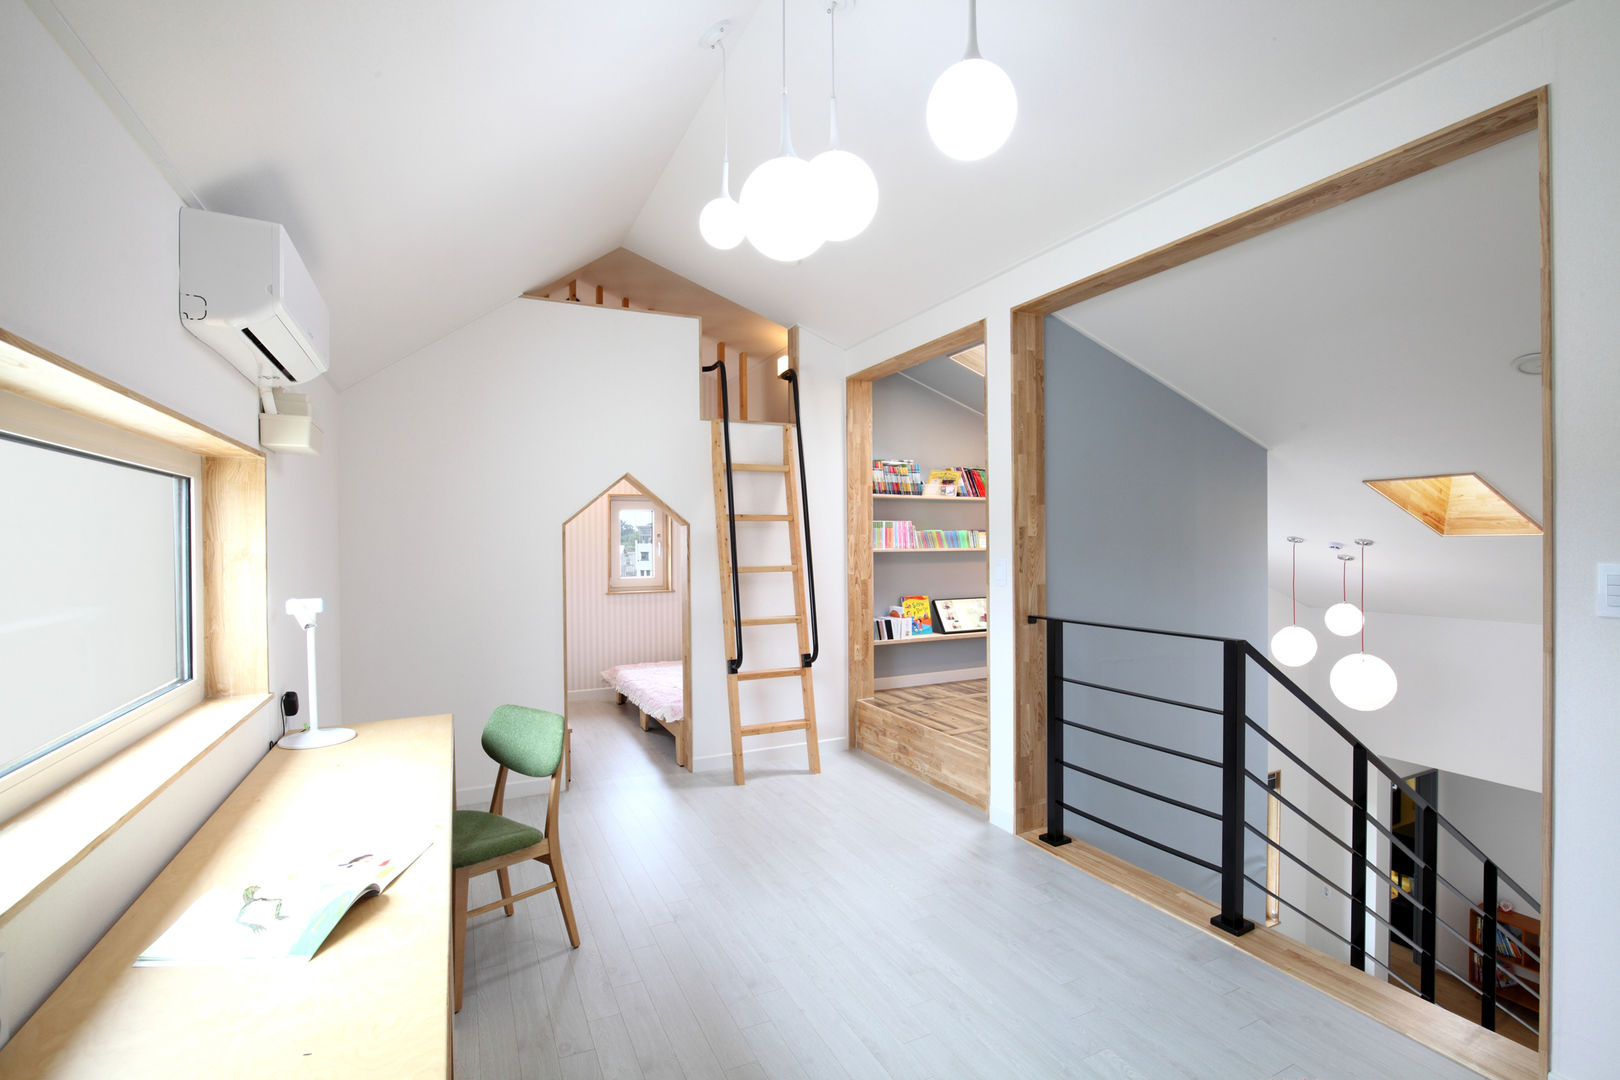 장성 - 세아이가 있는 하얀집, 주택설계전문 디자인그룹 홈스타일토토 주택설계전문 디자인그룹 홈스타일토토 Детская комната в стиле модерн ДСП